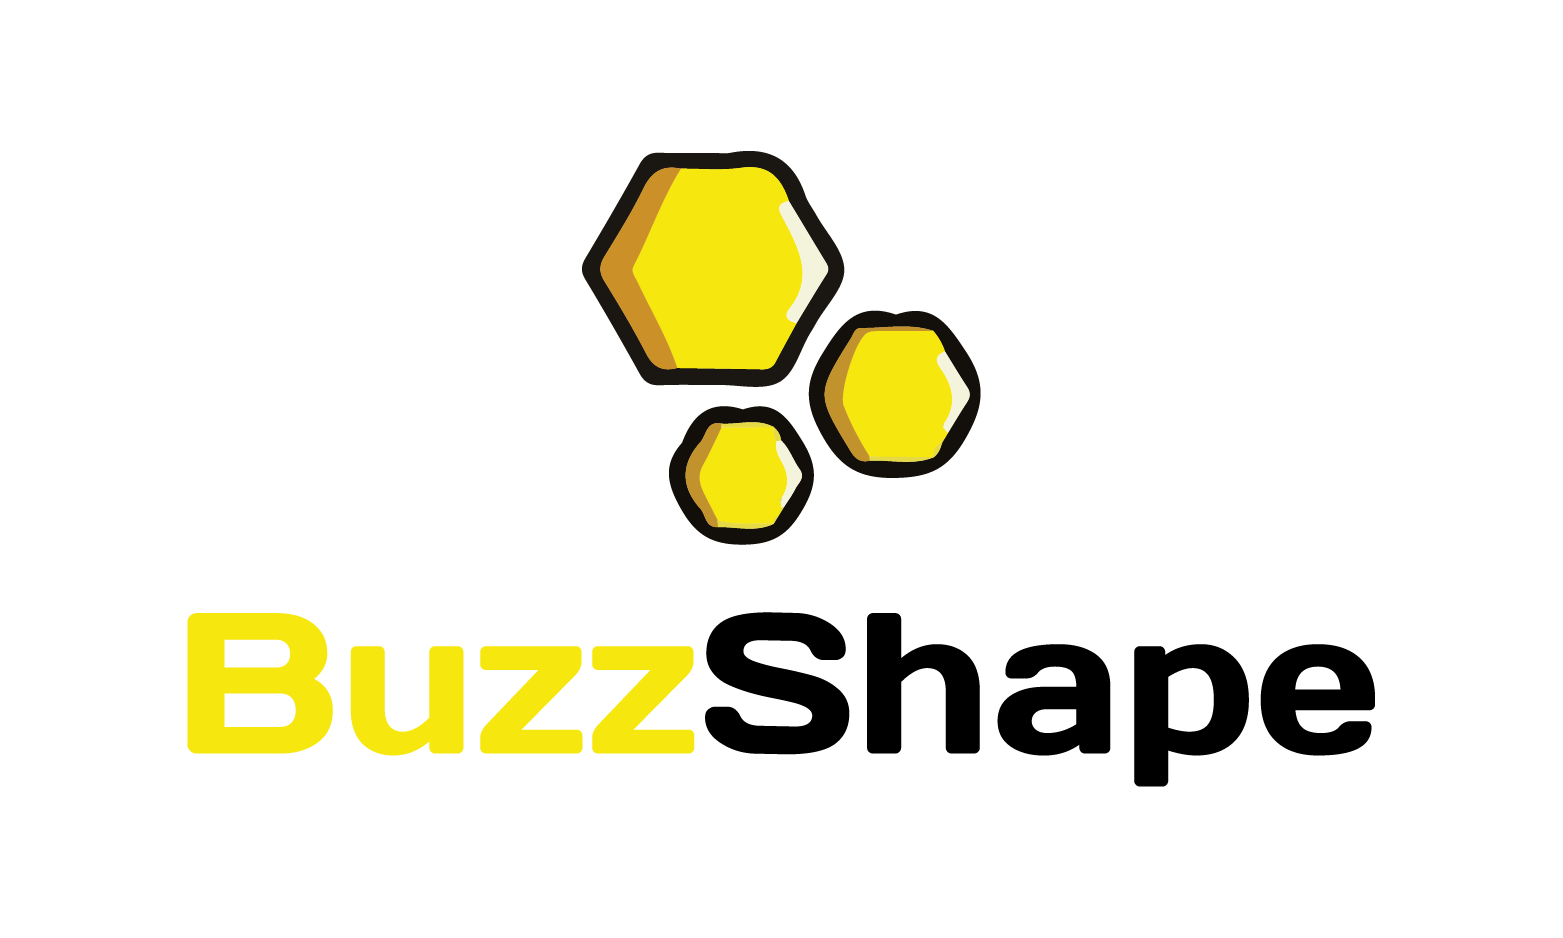 BuzzShape.com - Creative brandable domain for sale